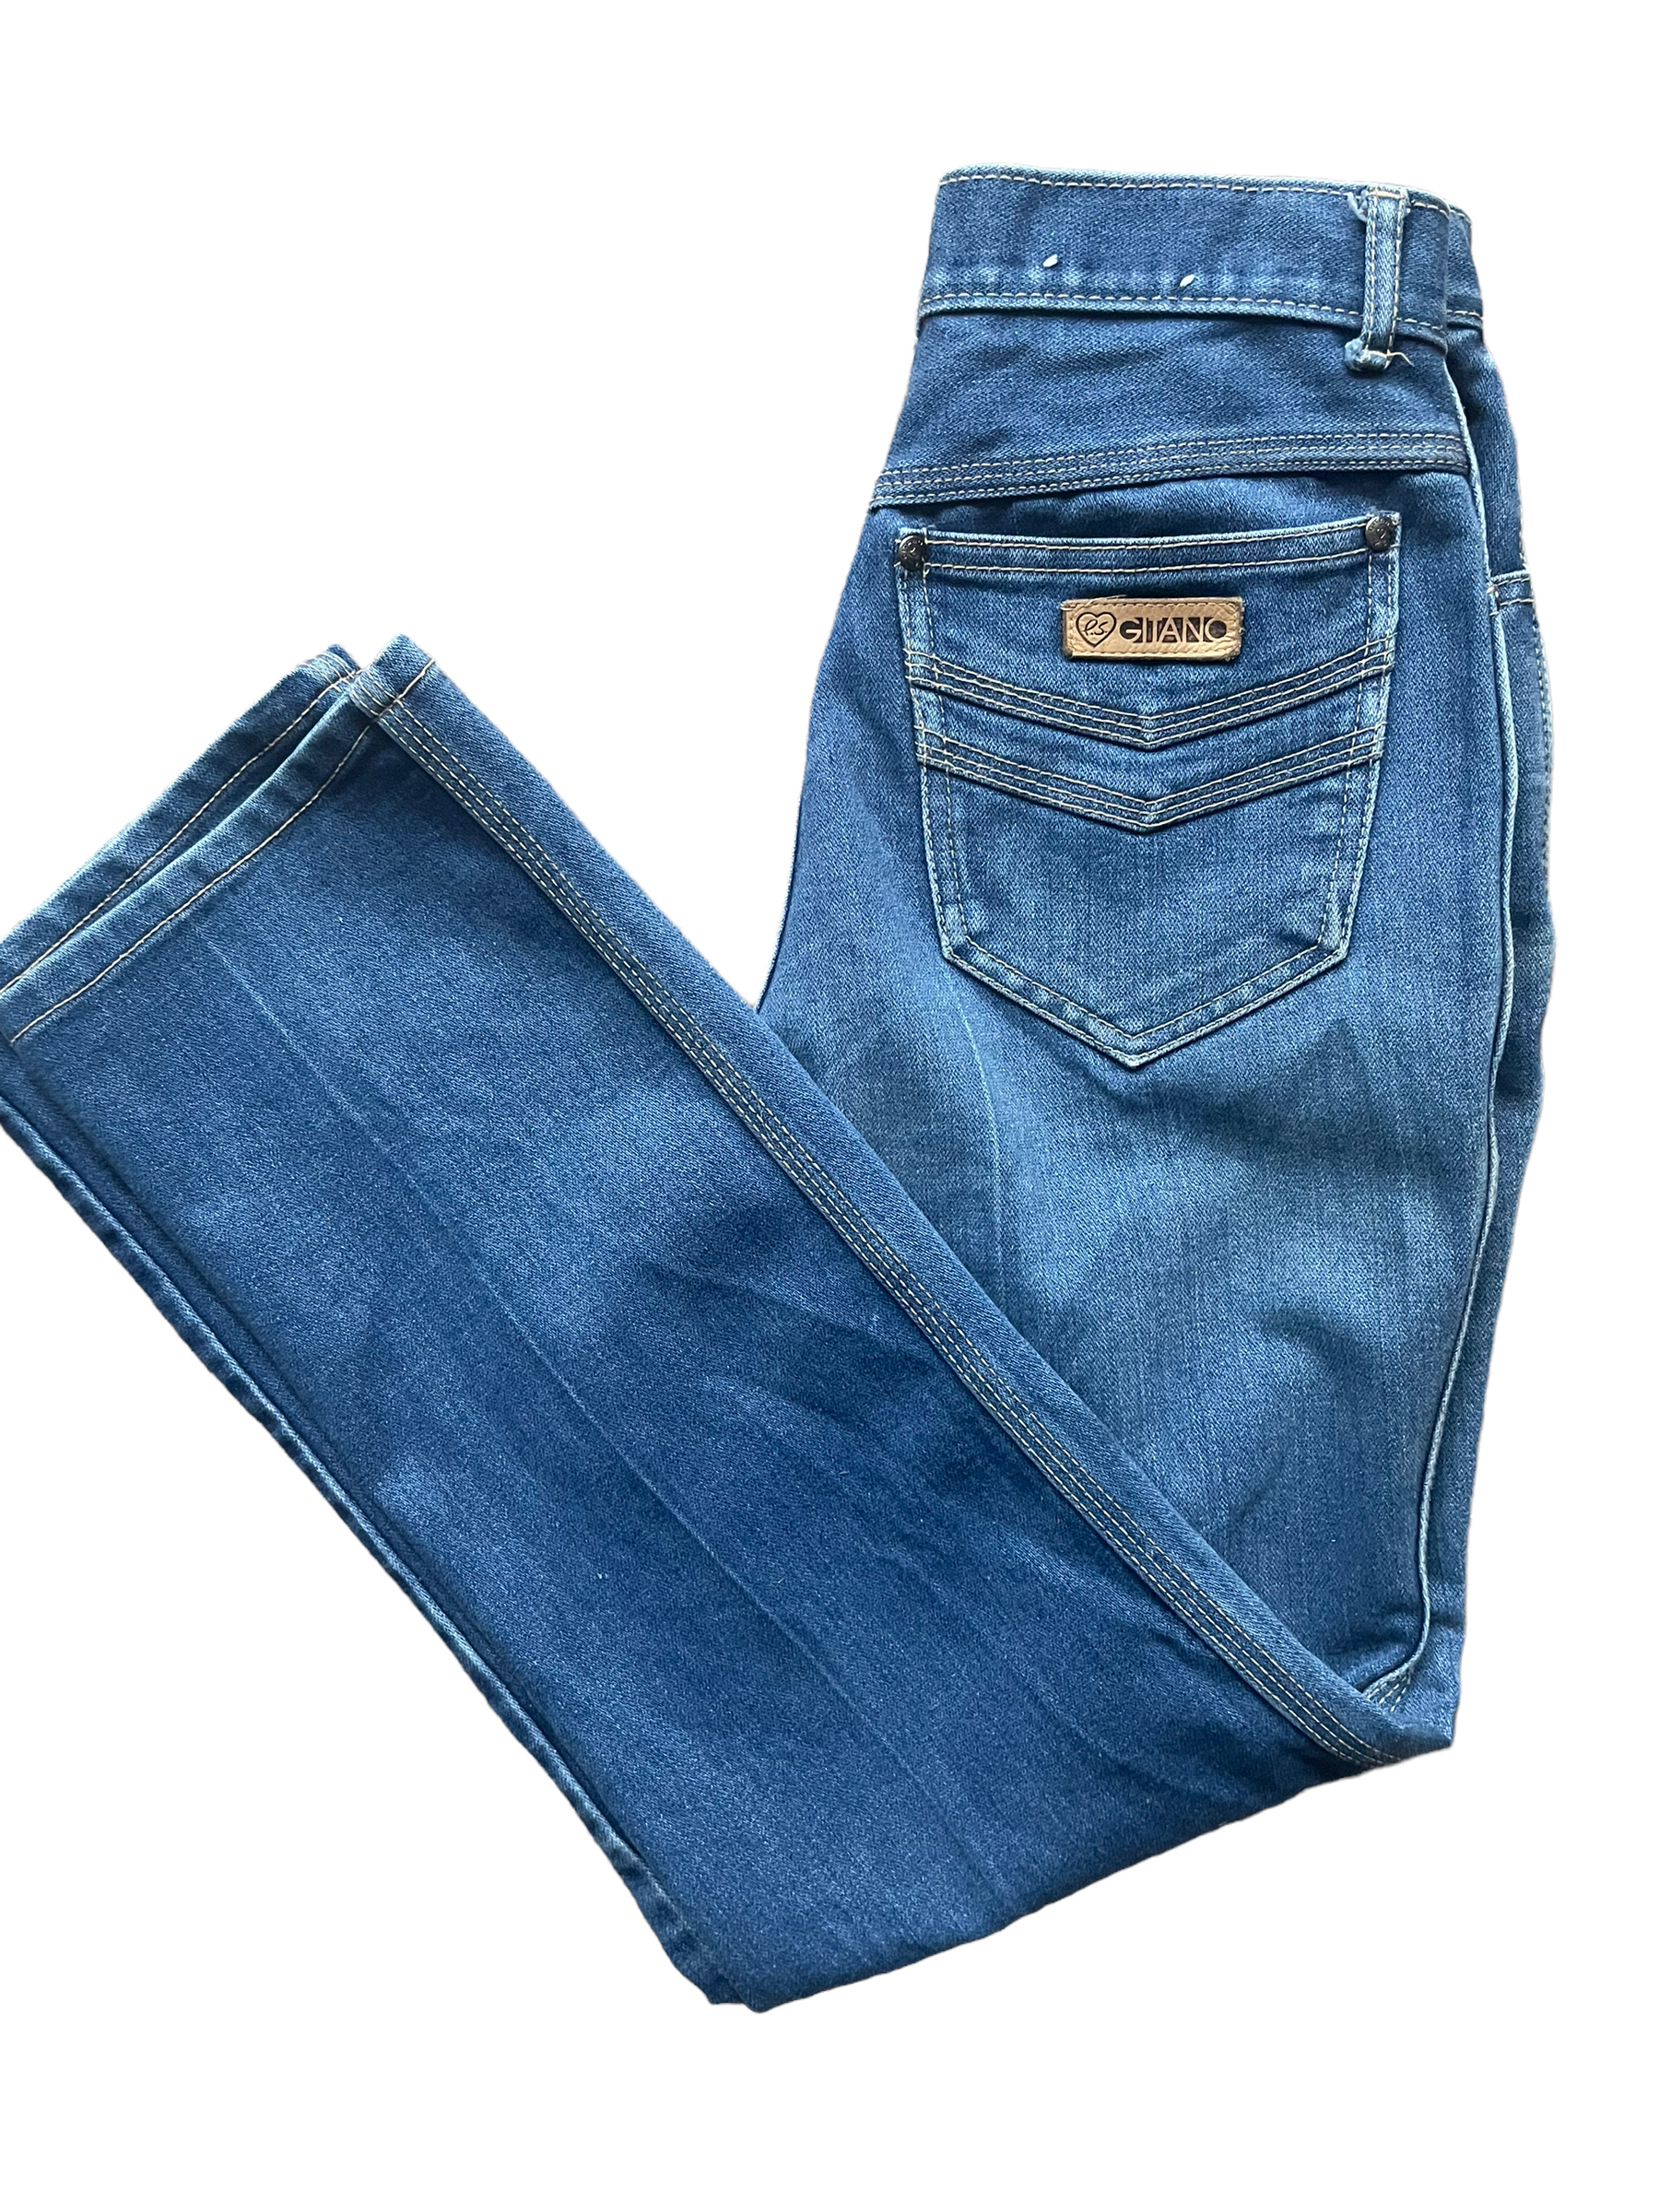 80s Gitano Blue Cotton Jeans (Size 10 Short)